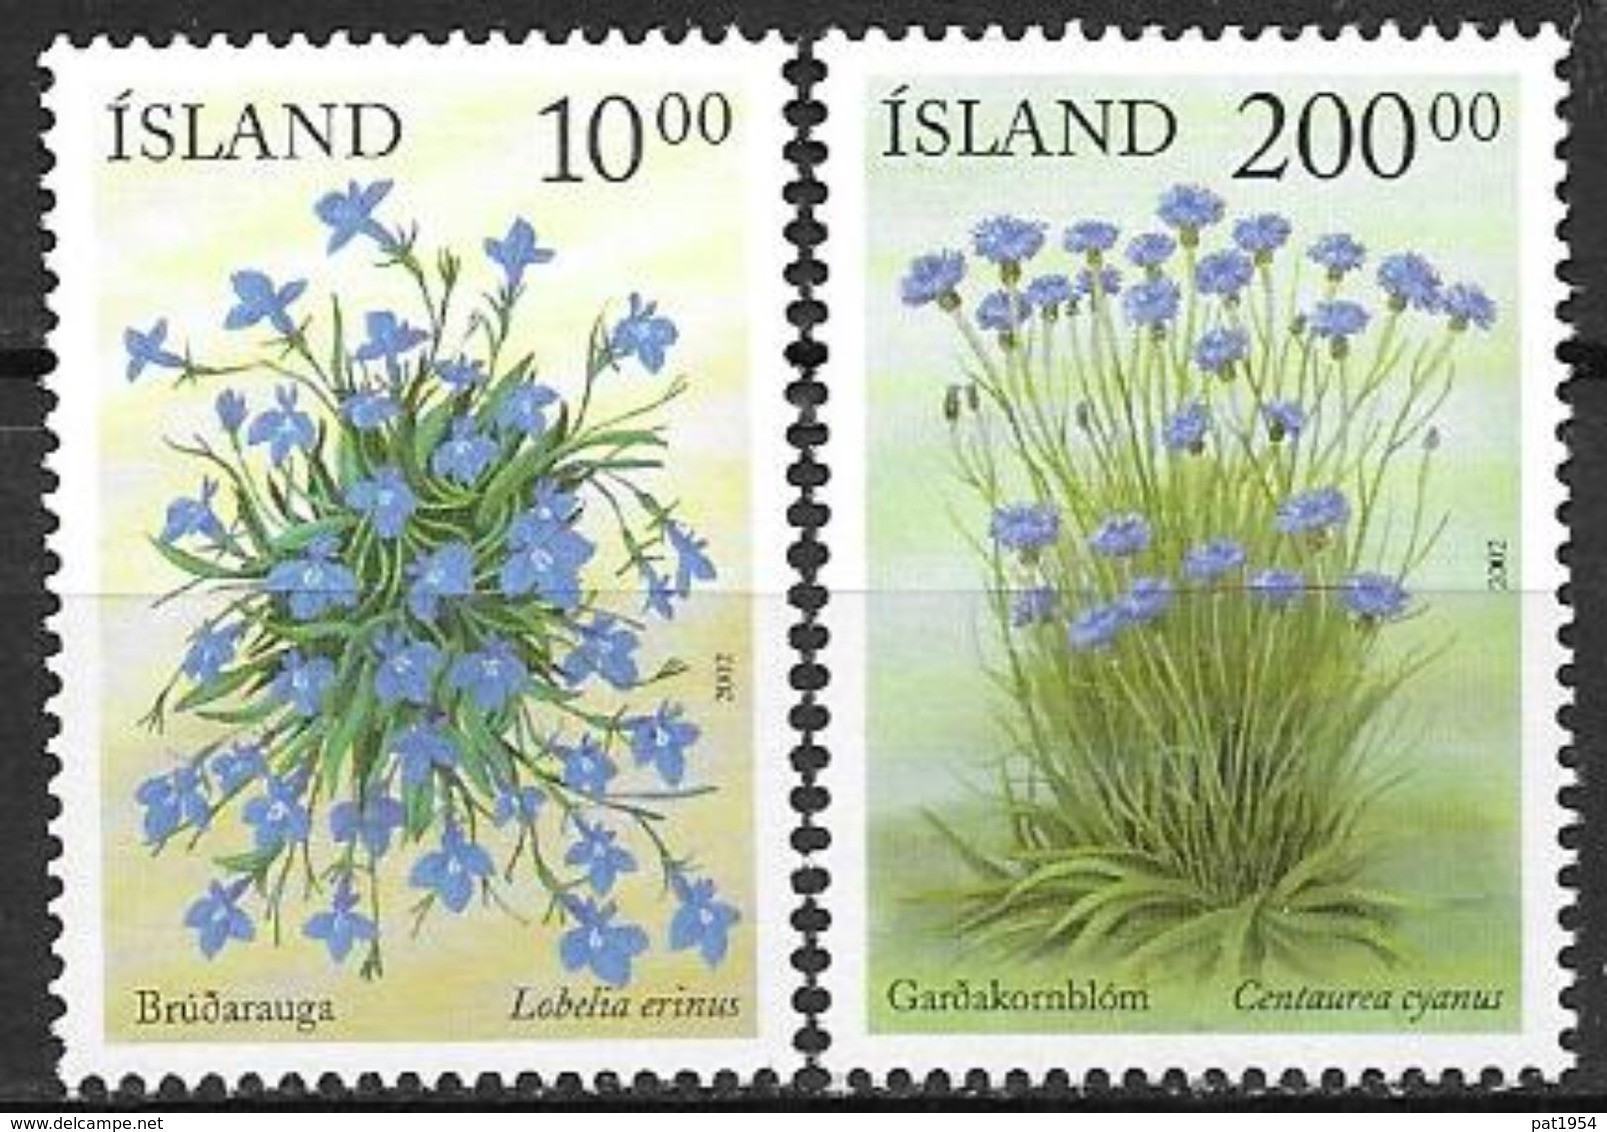 Islande 2002 N°945/946 Neufs** Fleurs D'été - Unused Stamps